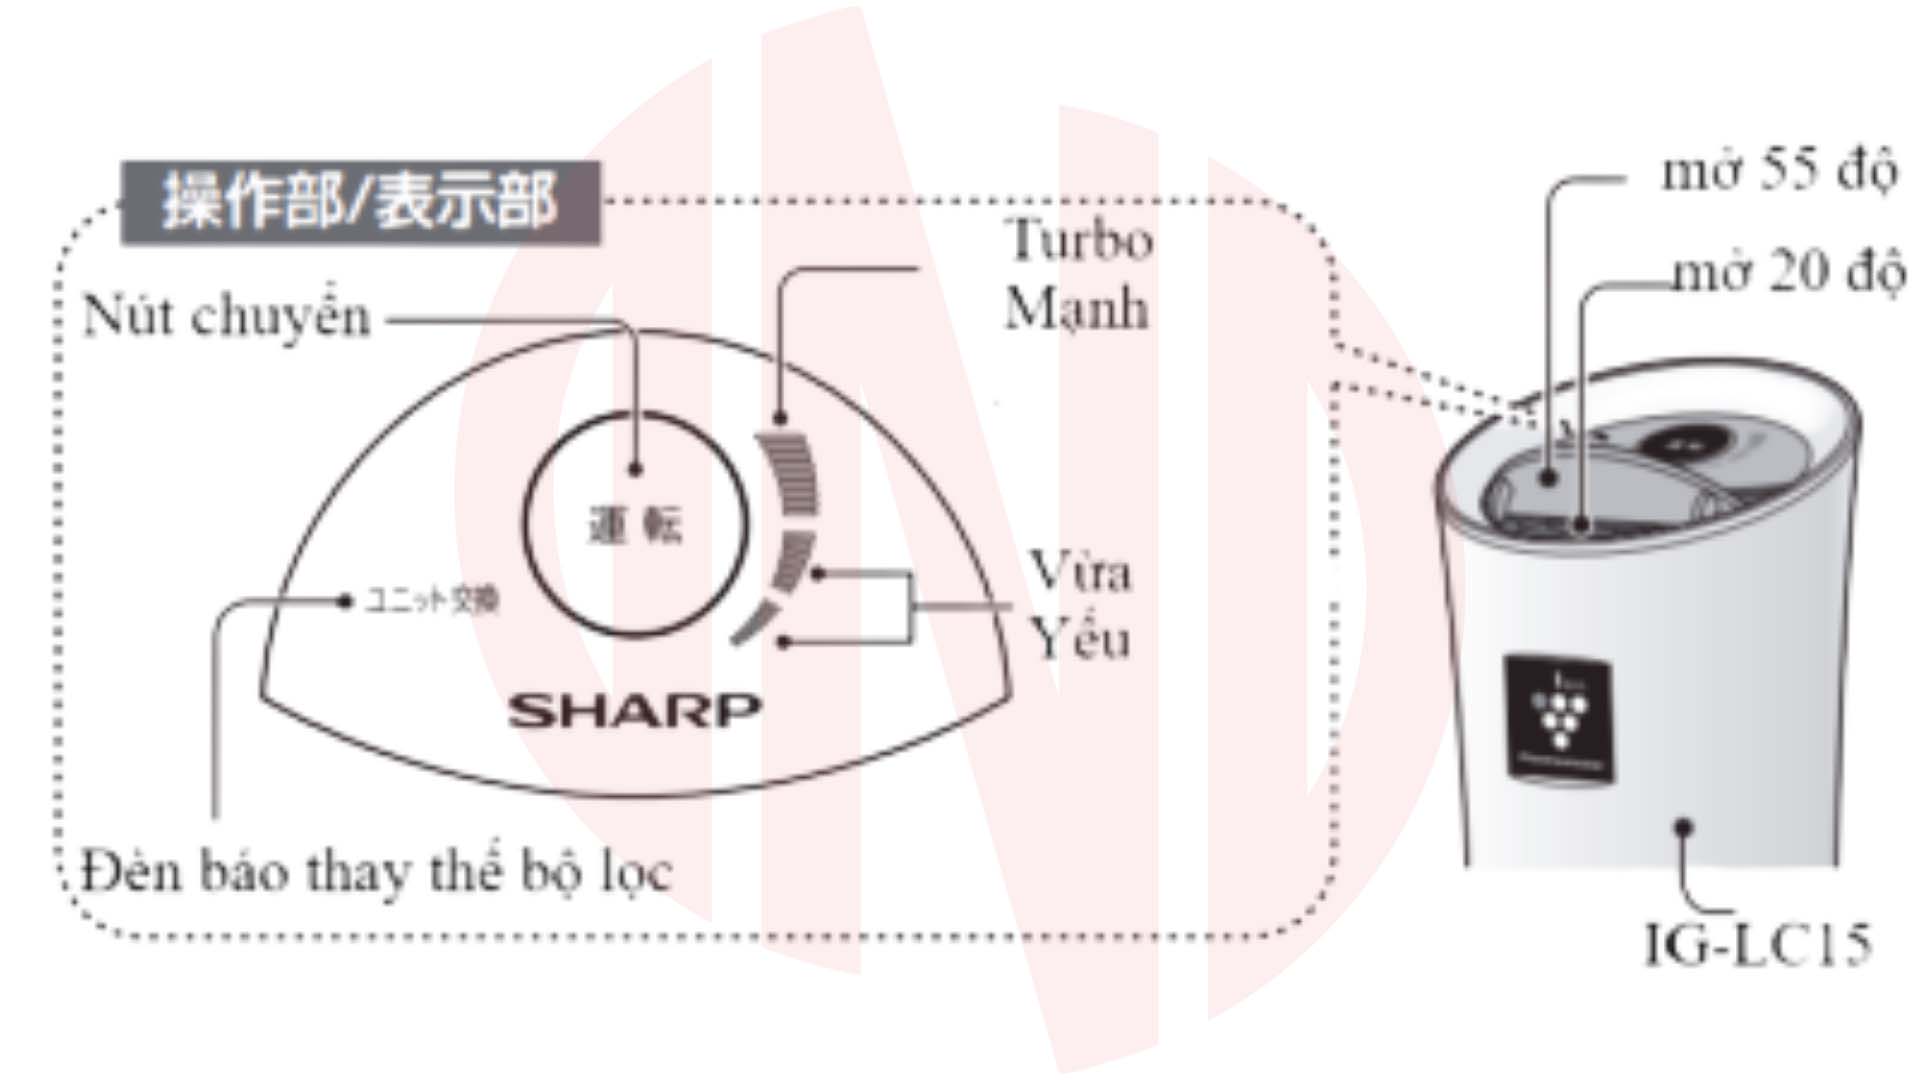 Hướng dẫn sử dụng máy lọc không khí ô tô Sharp IG-LC15-B